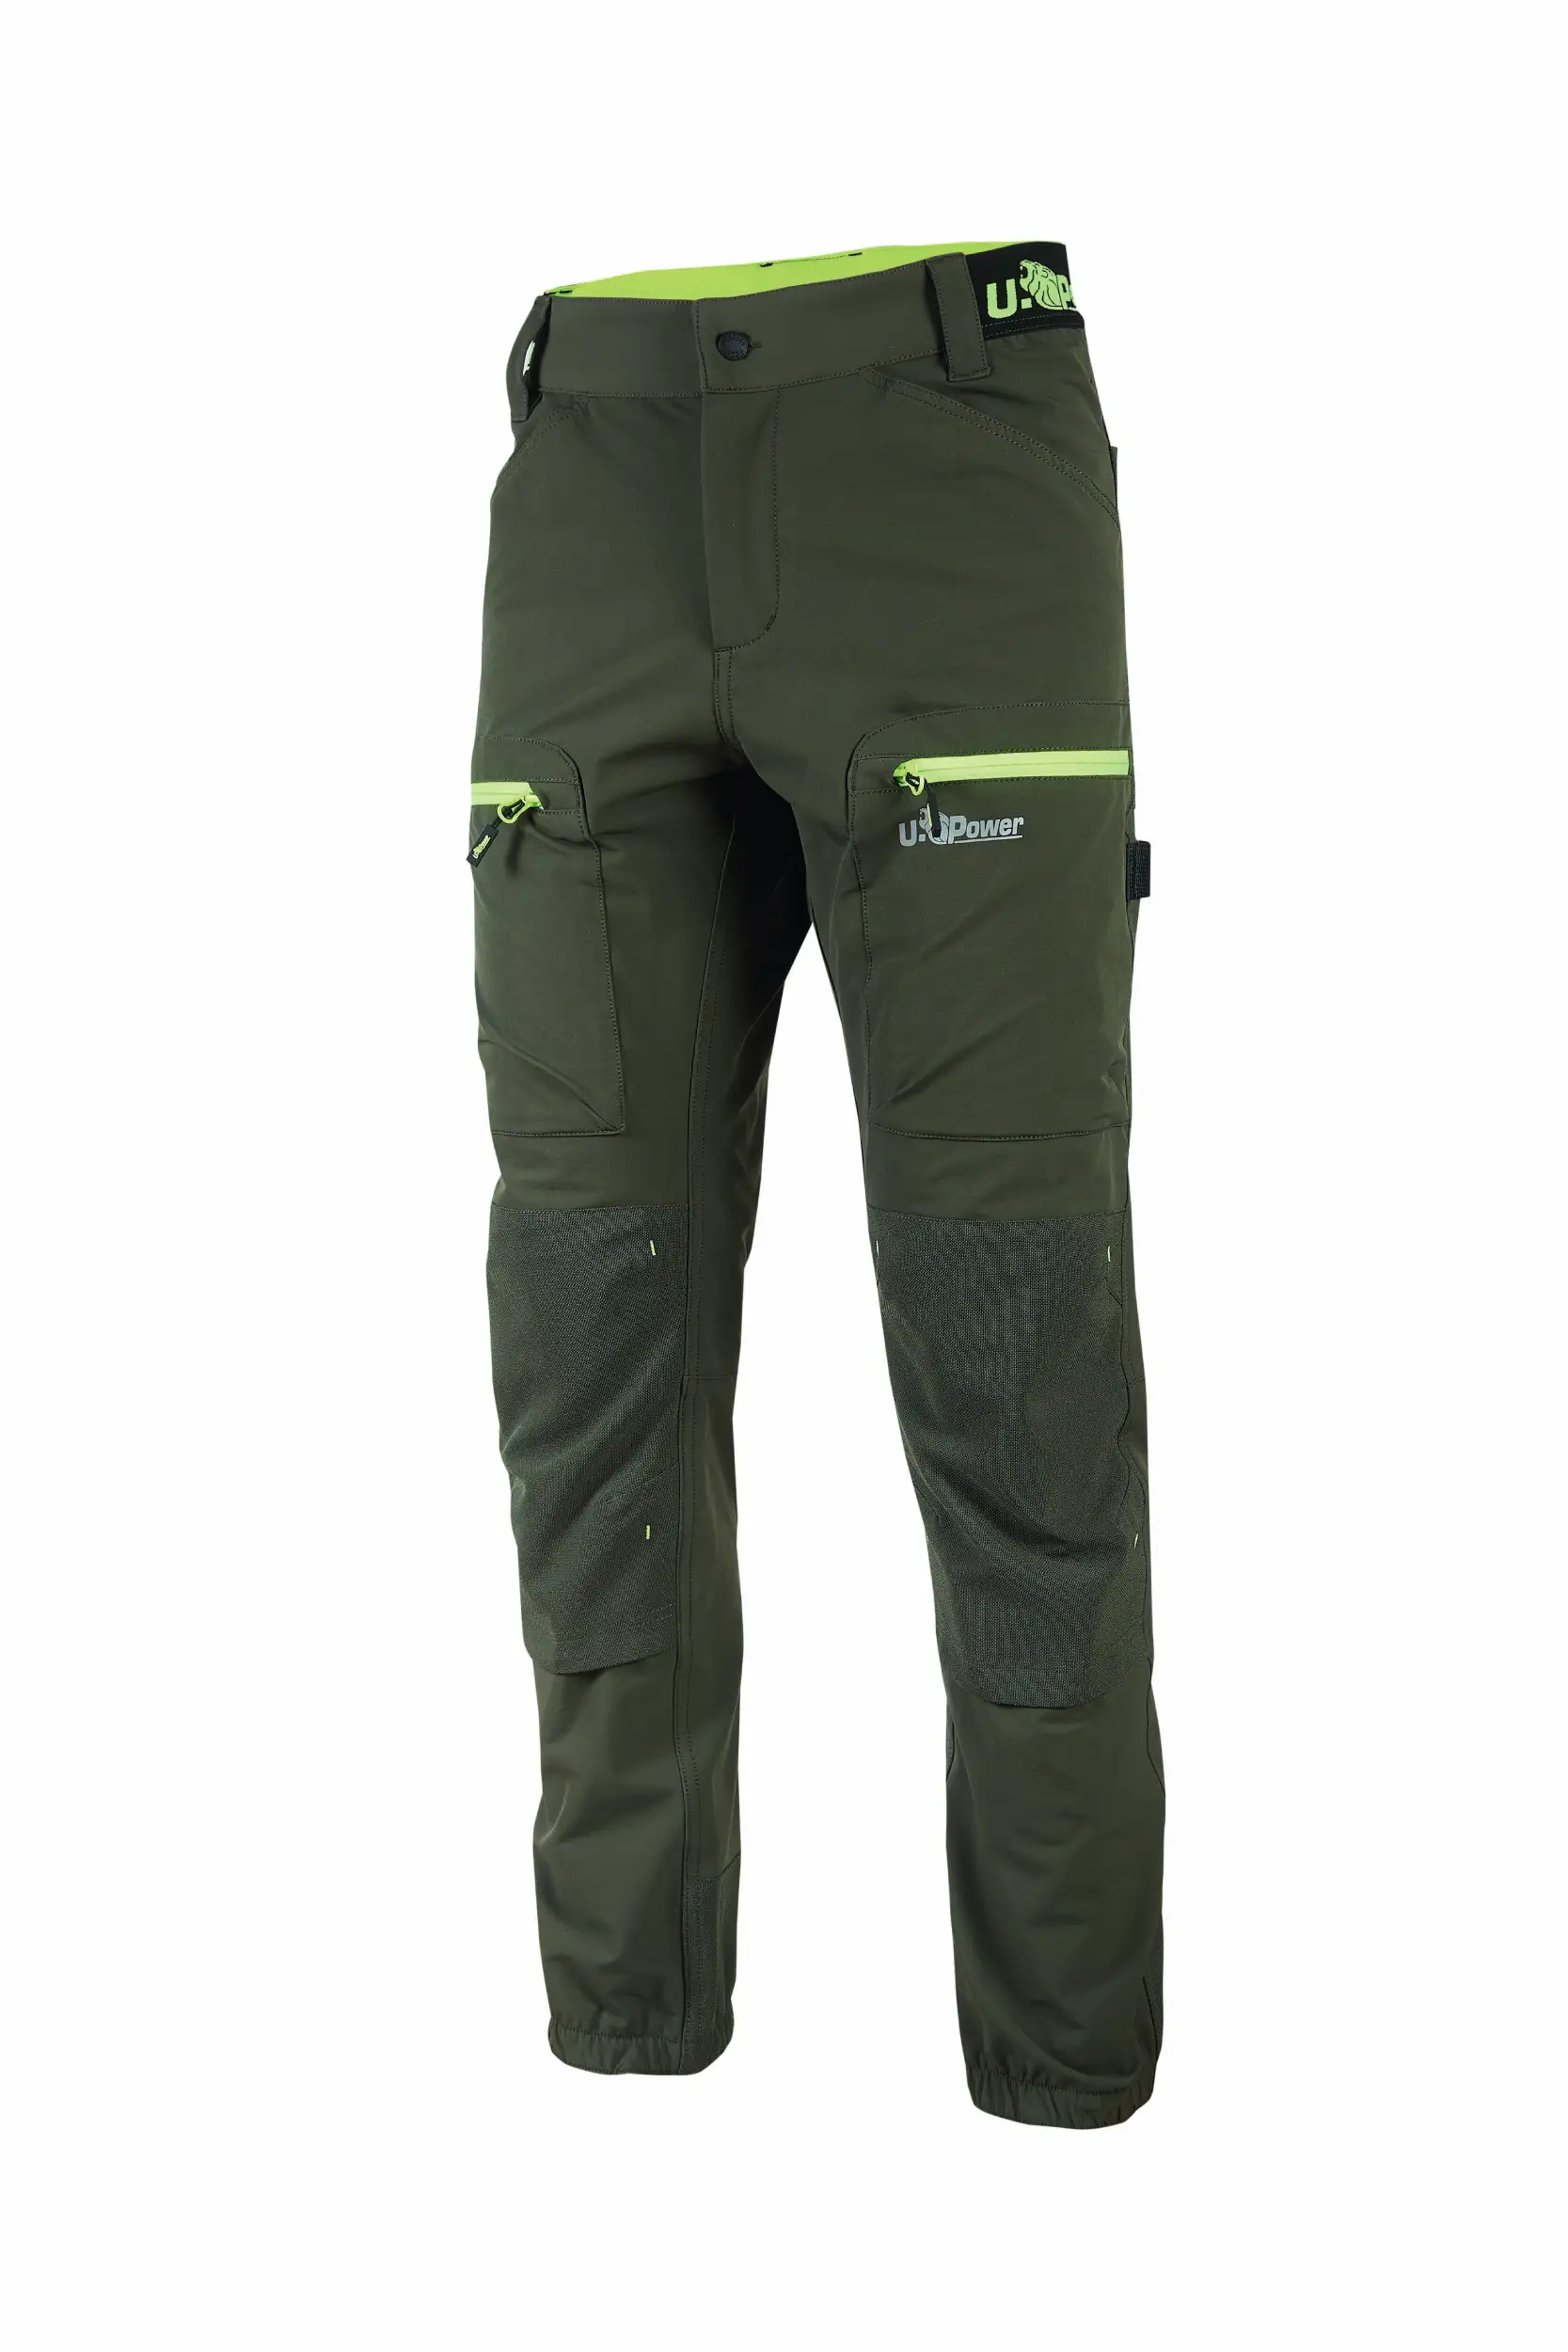 Pantalone da lavoro U-power Horizon Dark Green - CHIRICOT